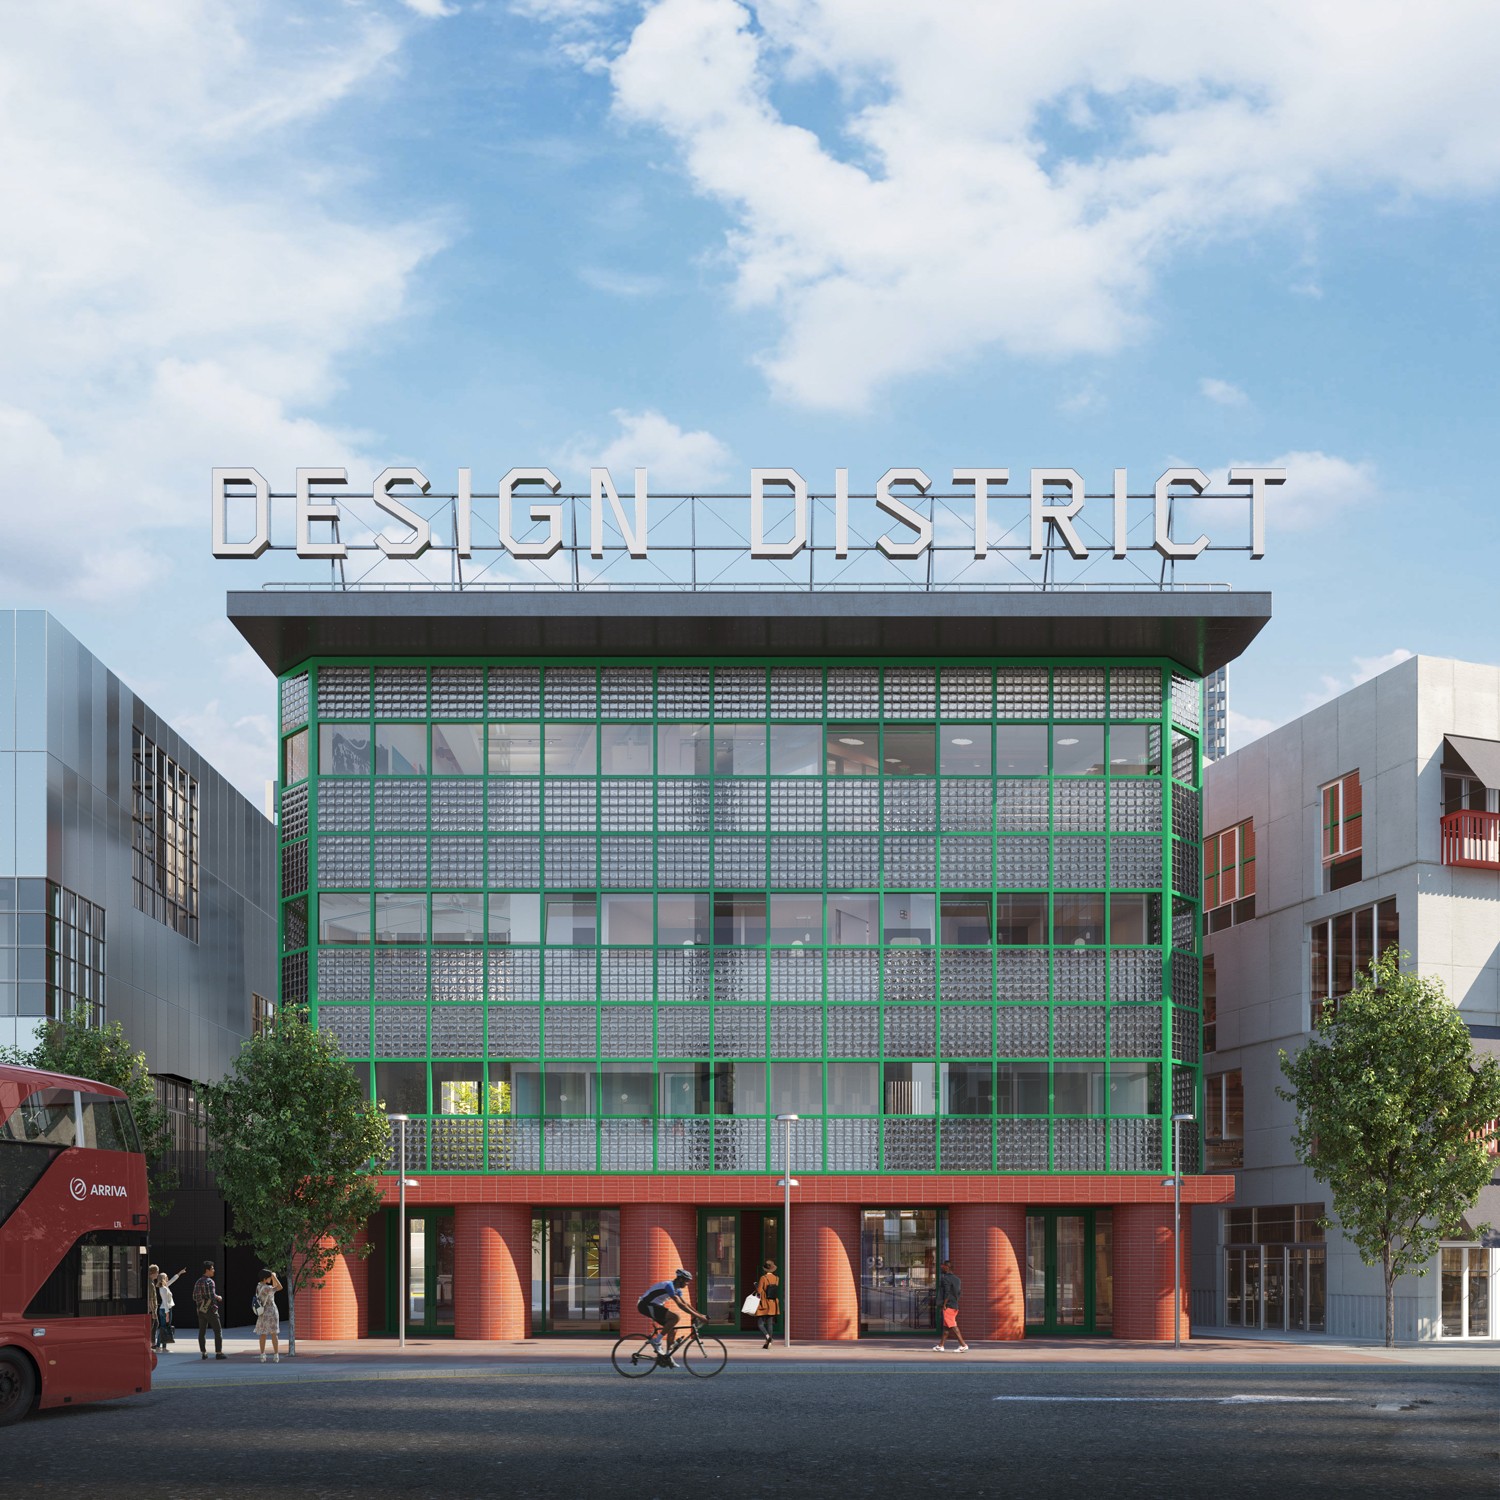 Por dentro do novo Design District de Londres, que será inaugurado em 2020 (Foto: London Design District/Divulgação)